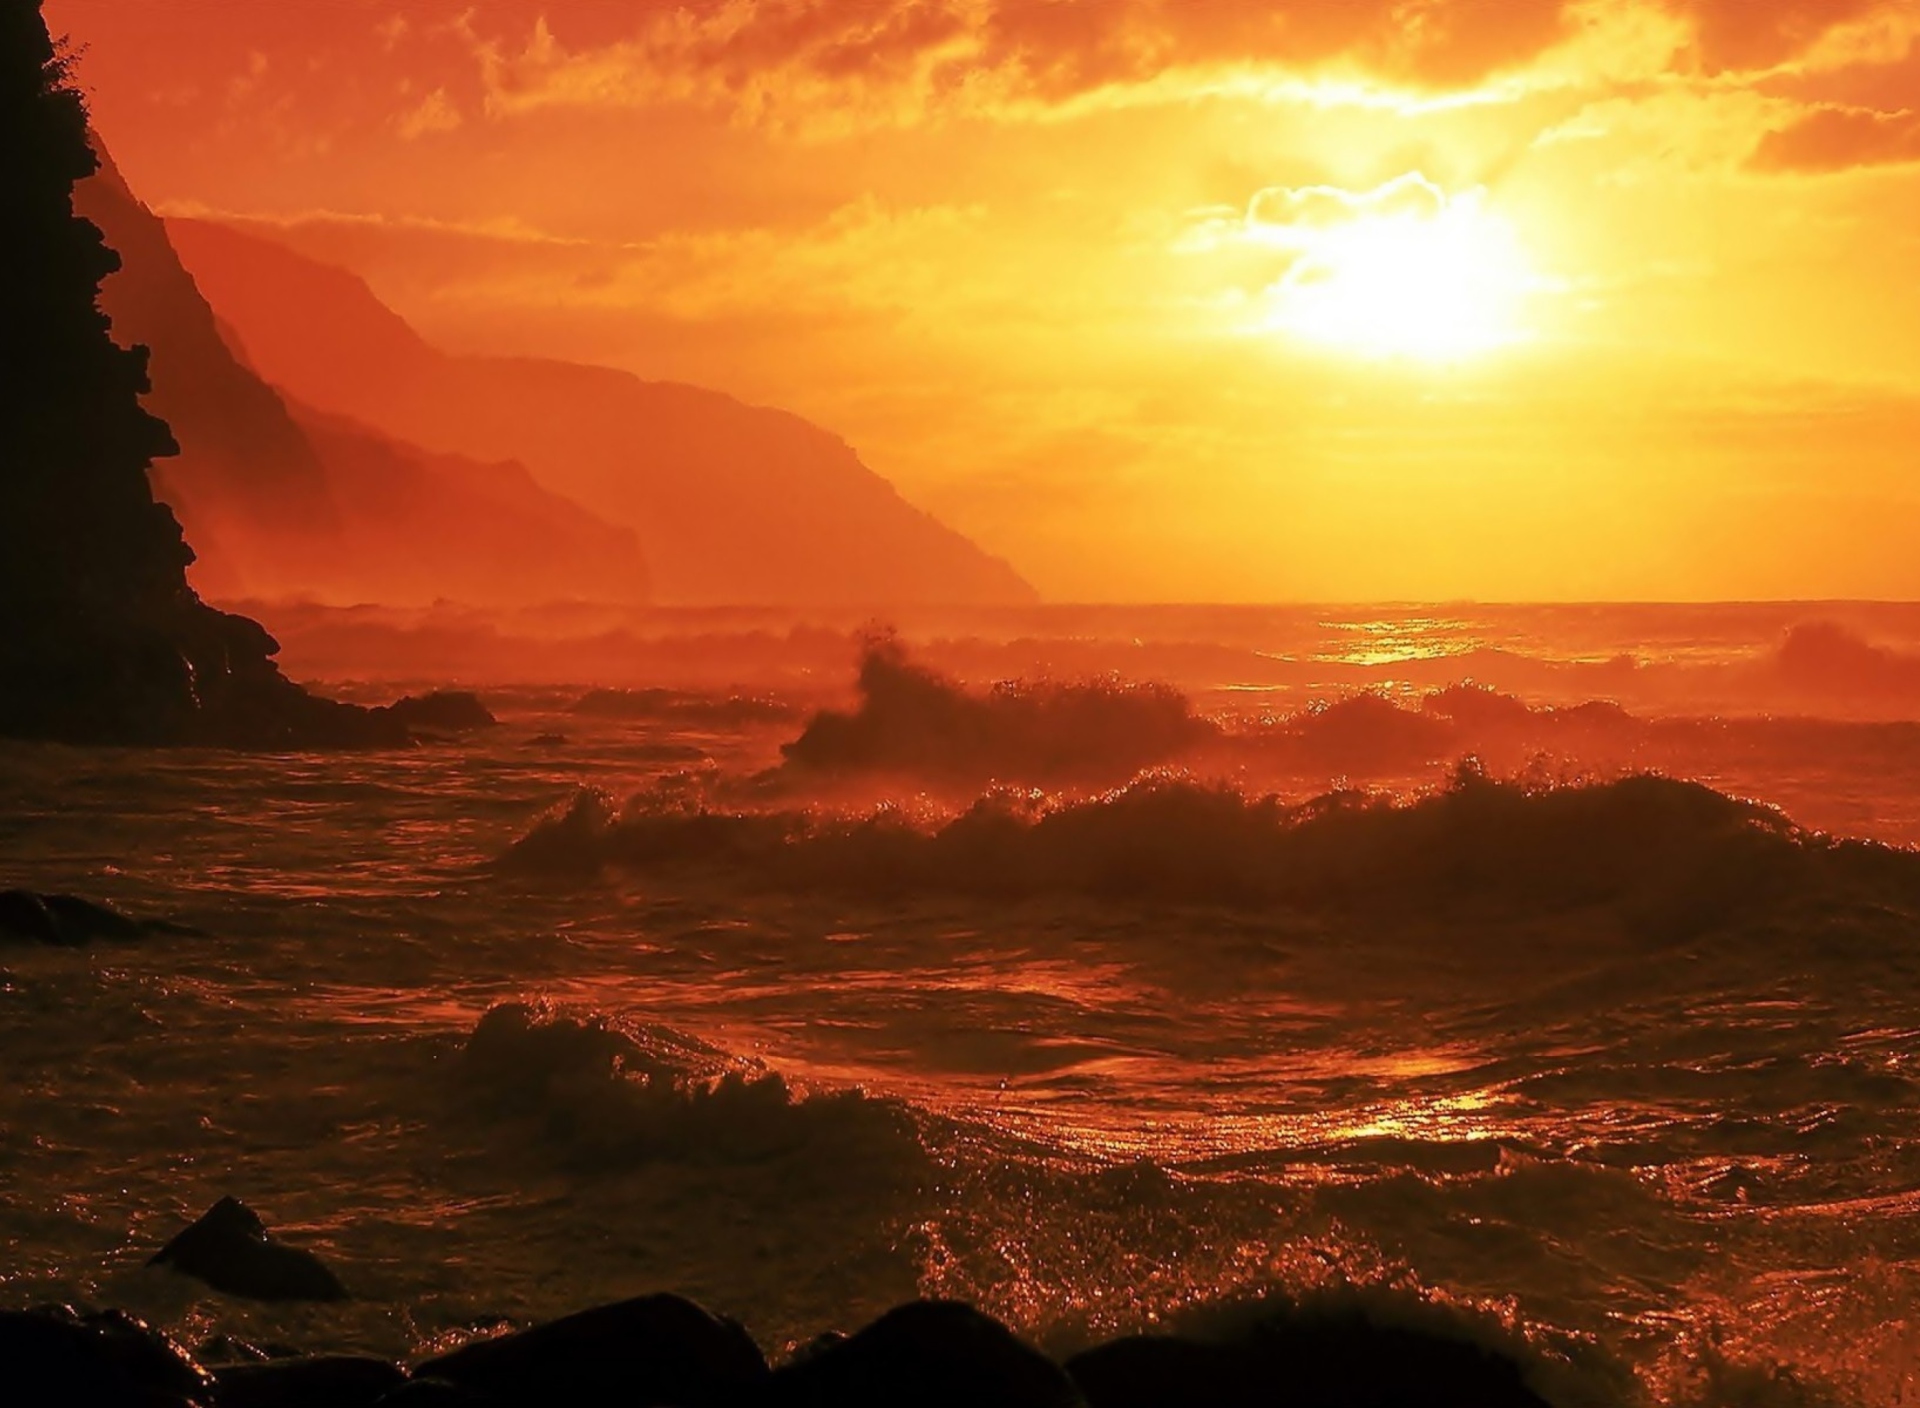 Sfondi Ocean Waves At Sunset 1920x1408